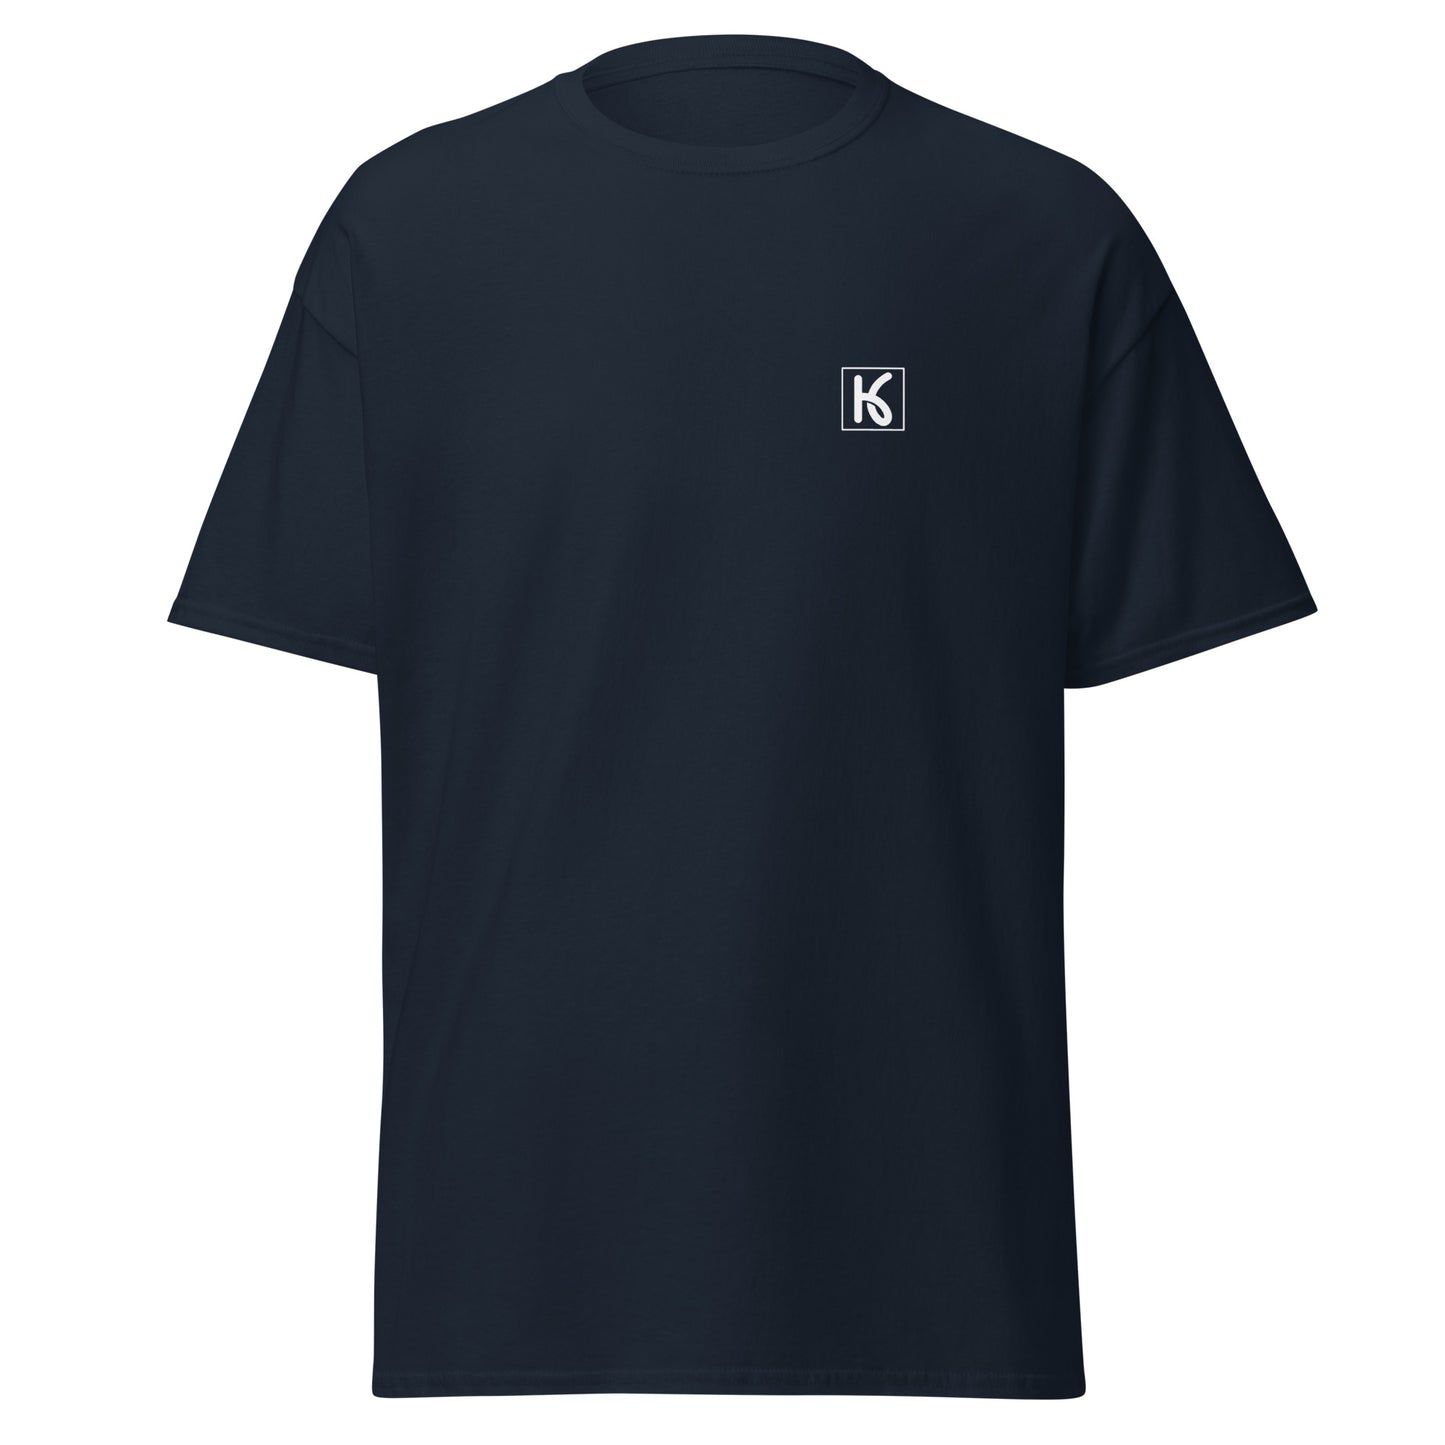 Camiseta clásica hombre Azul (Kiyo)